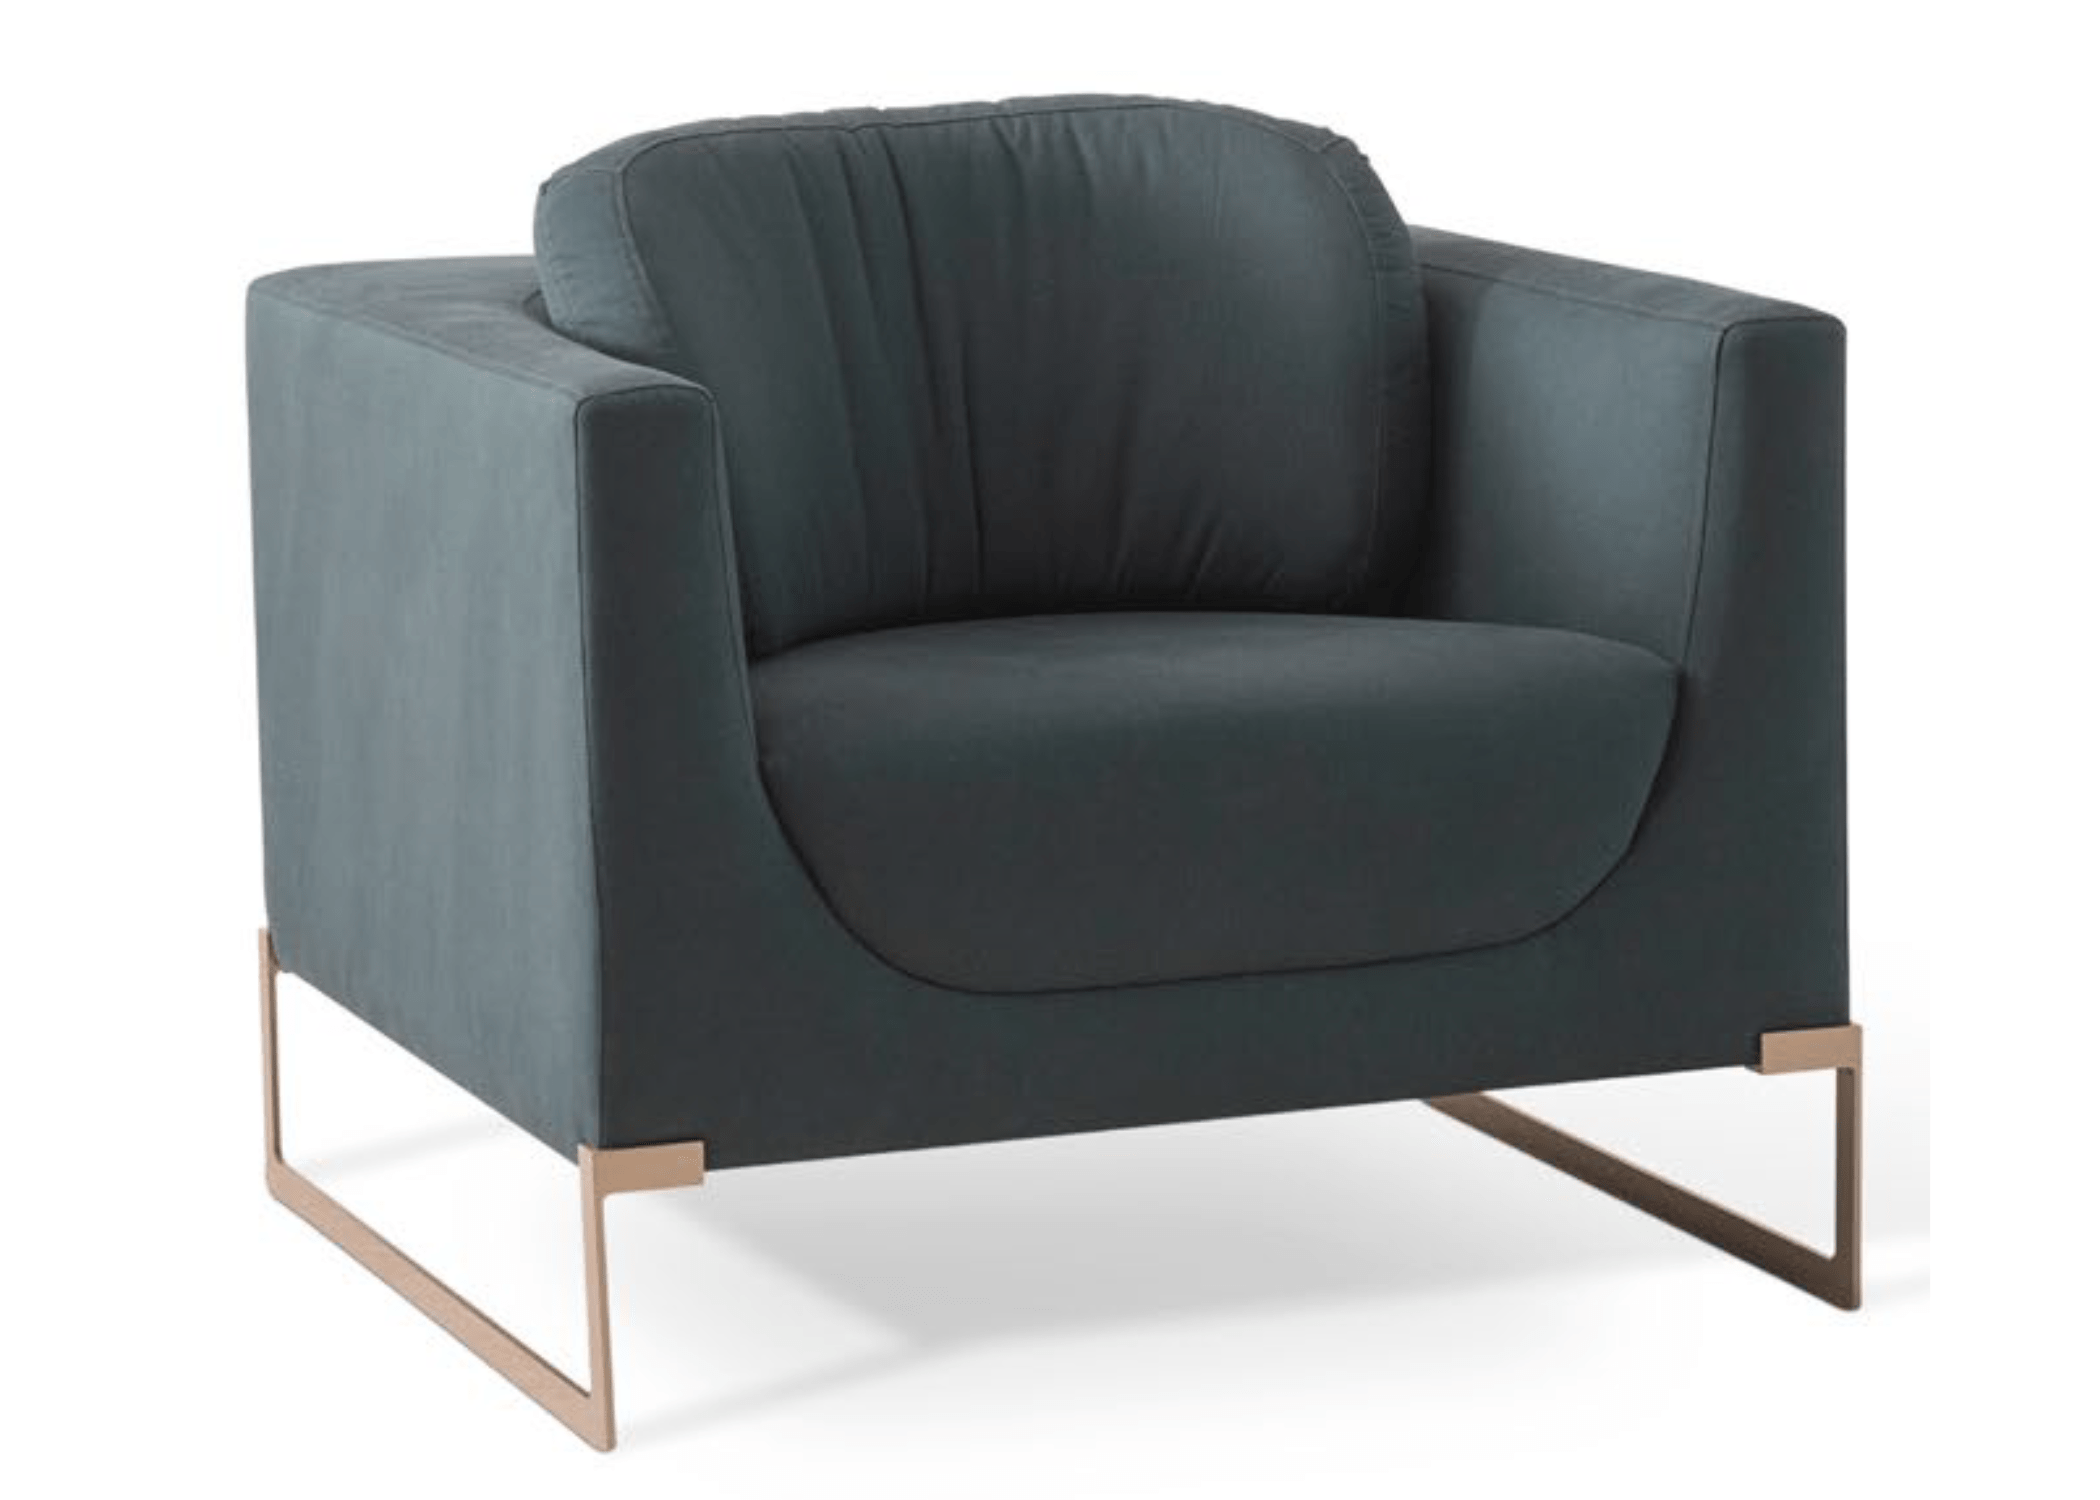 Assento confortável: detalhe da Poltrona Miranda com design moderno e geométrico.